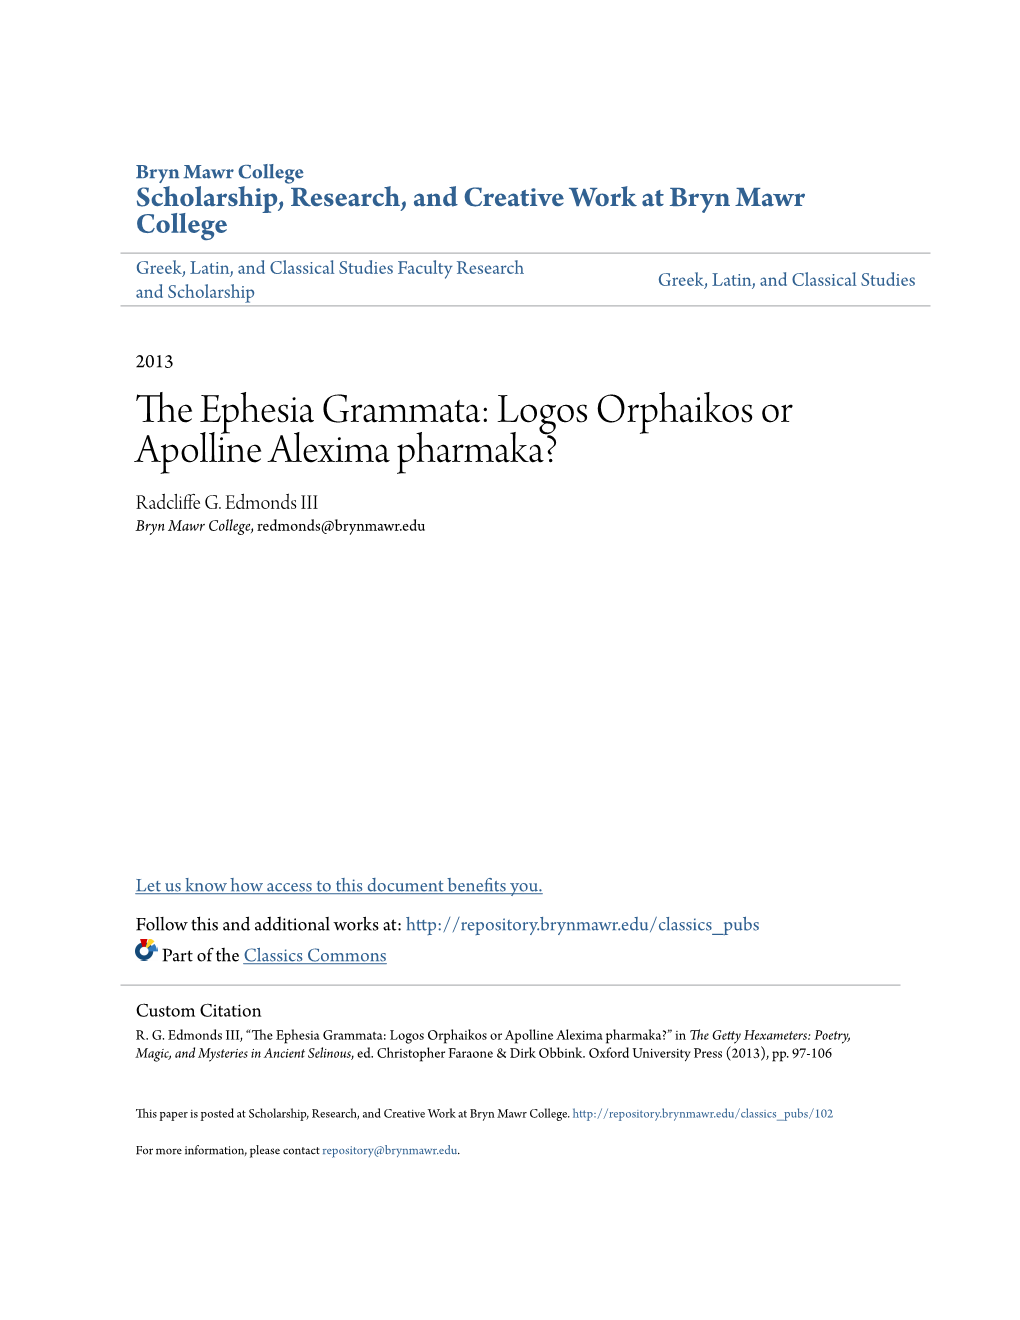 The Ephesia Grammata: Logos Orphaikos Or Apolline Alexima Pharmaka?